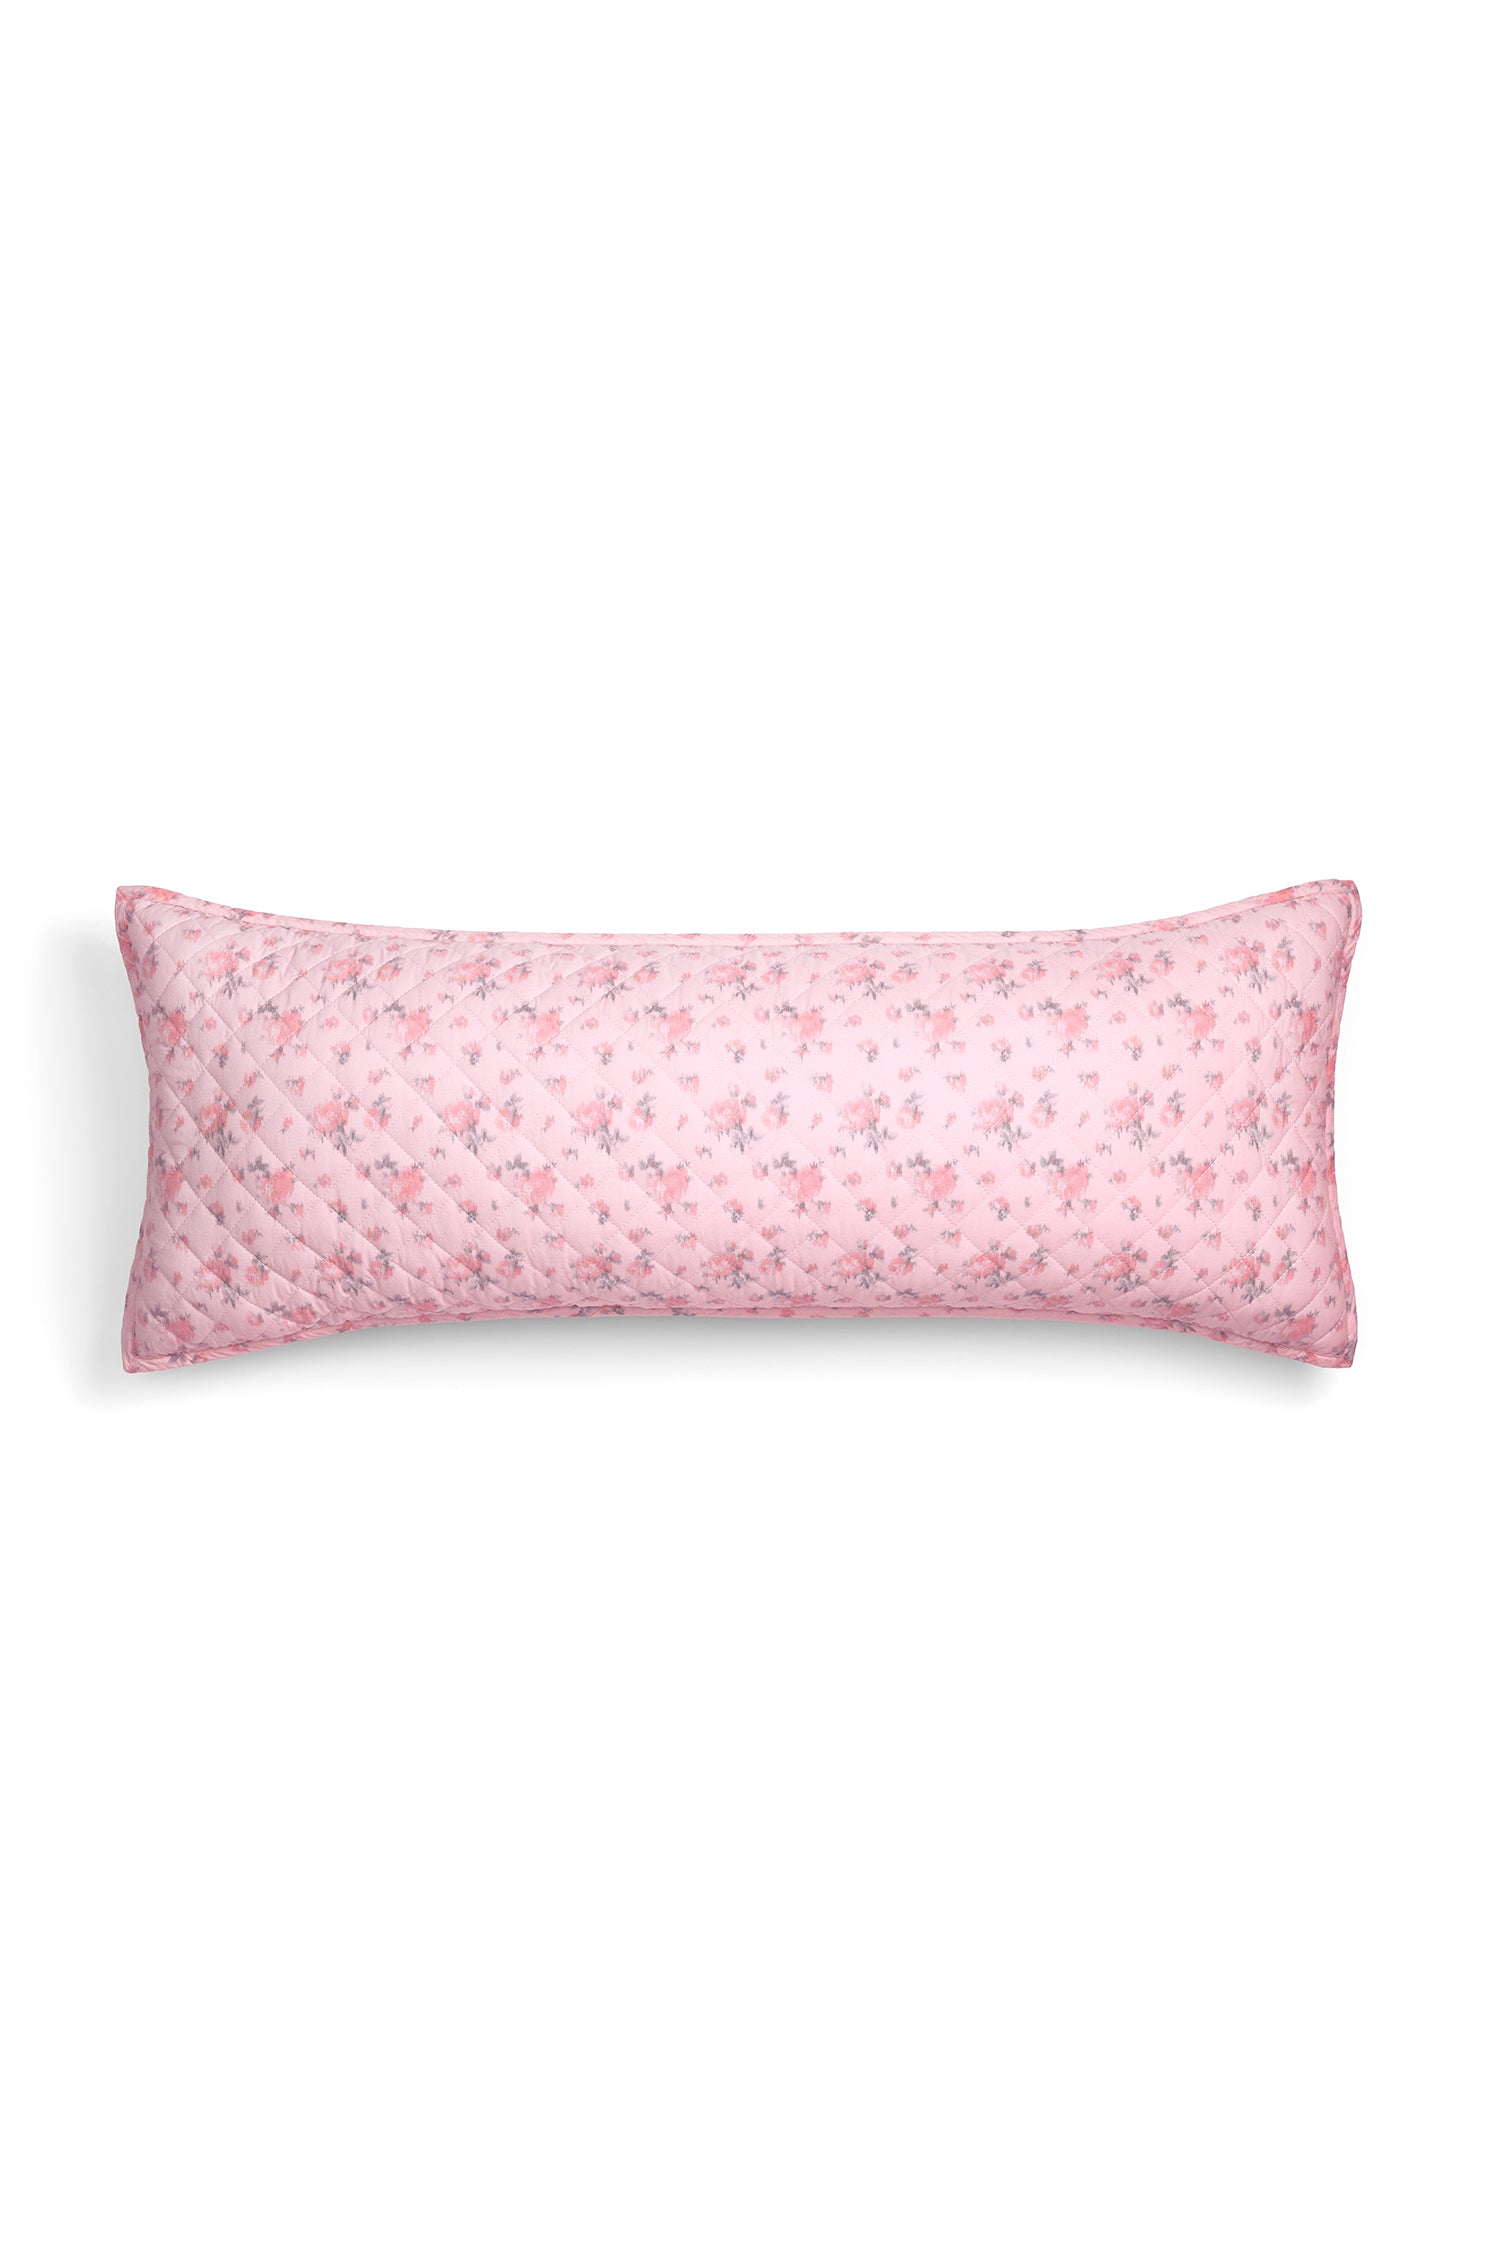 Amaranth - Pink Silk Lumbar Pillow Cover  Lumbar throw pillow, Modern  decorative pillows, Lumbar pillow cover